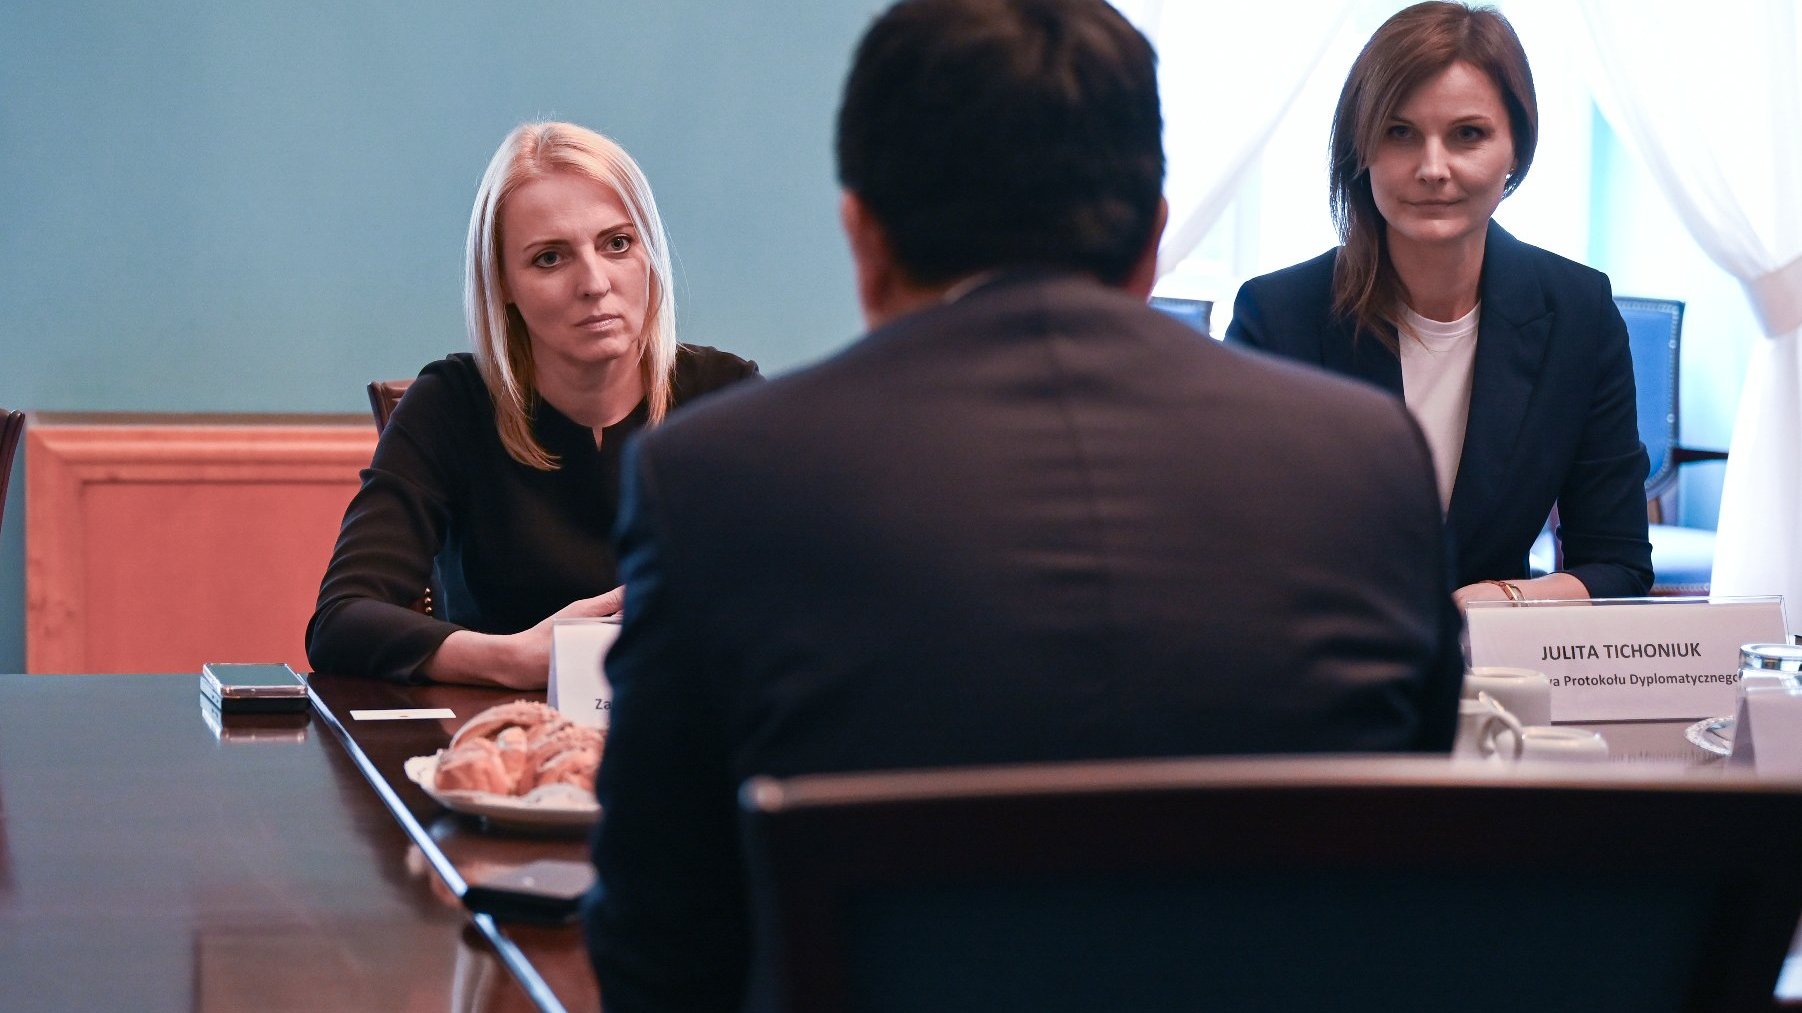 Na zdjęciu zastępczyni prezydenta rozmawiająca z ambasadorem, obok niej siedzi kobieta